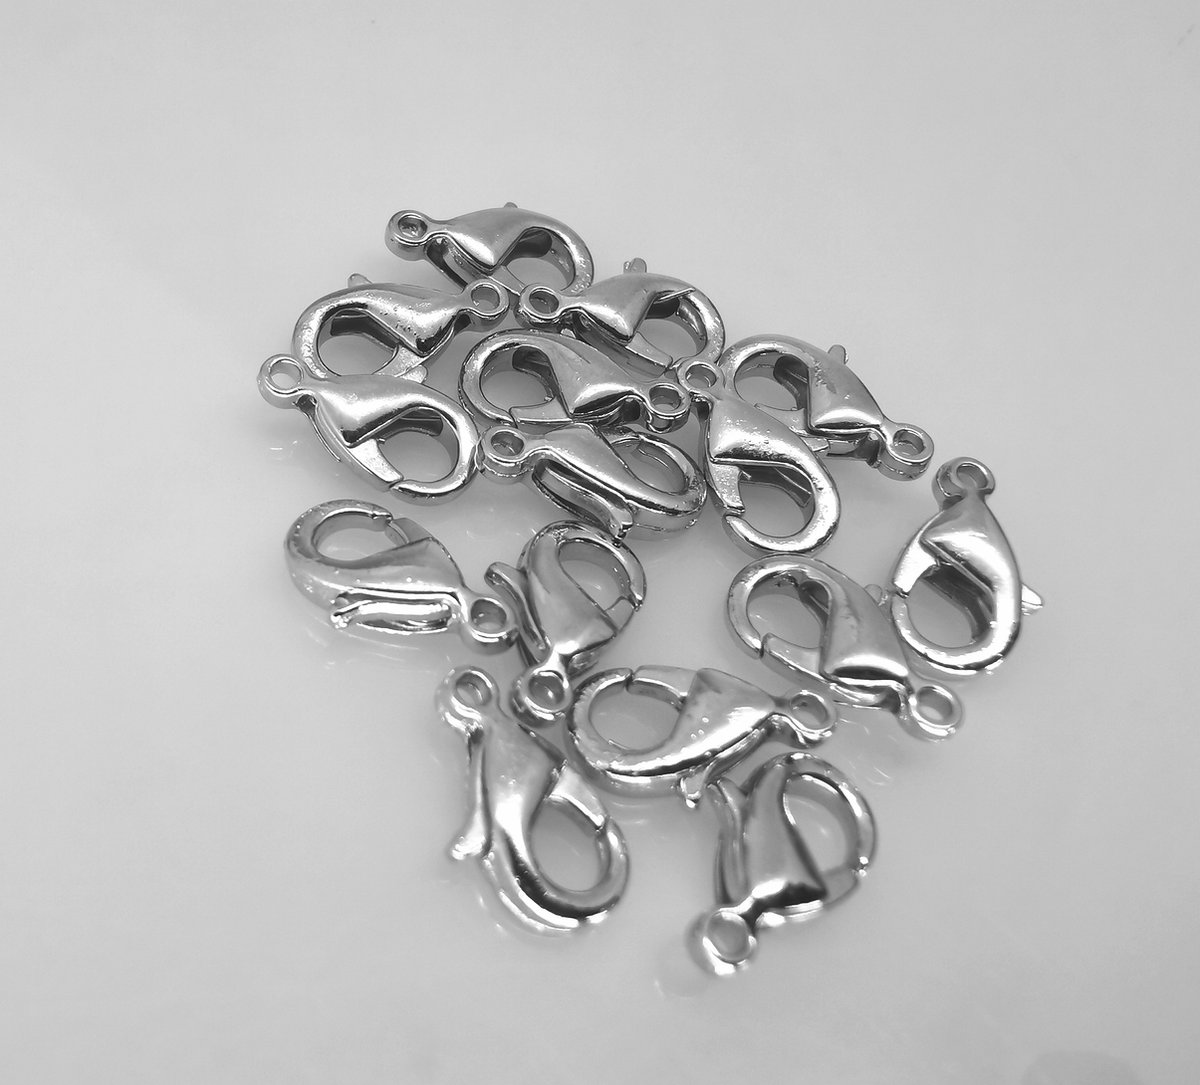 15 x Karabijnsluiting, antiek zilverkleur, L 10 x 5 mm, voor sieraden maken.